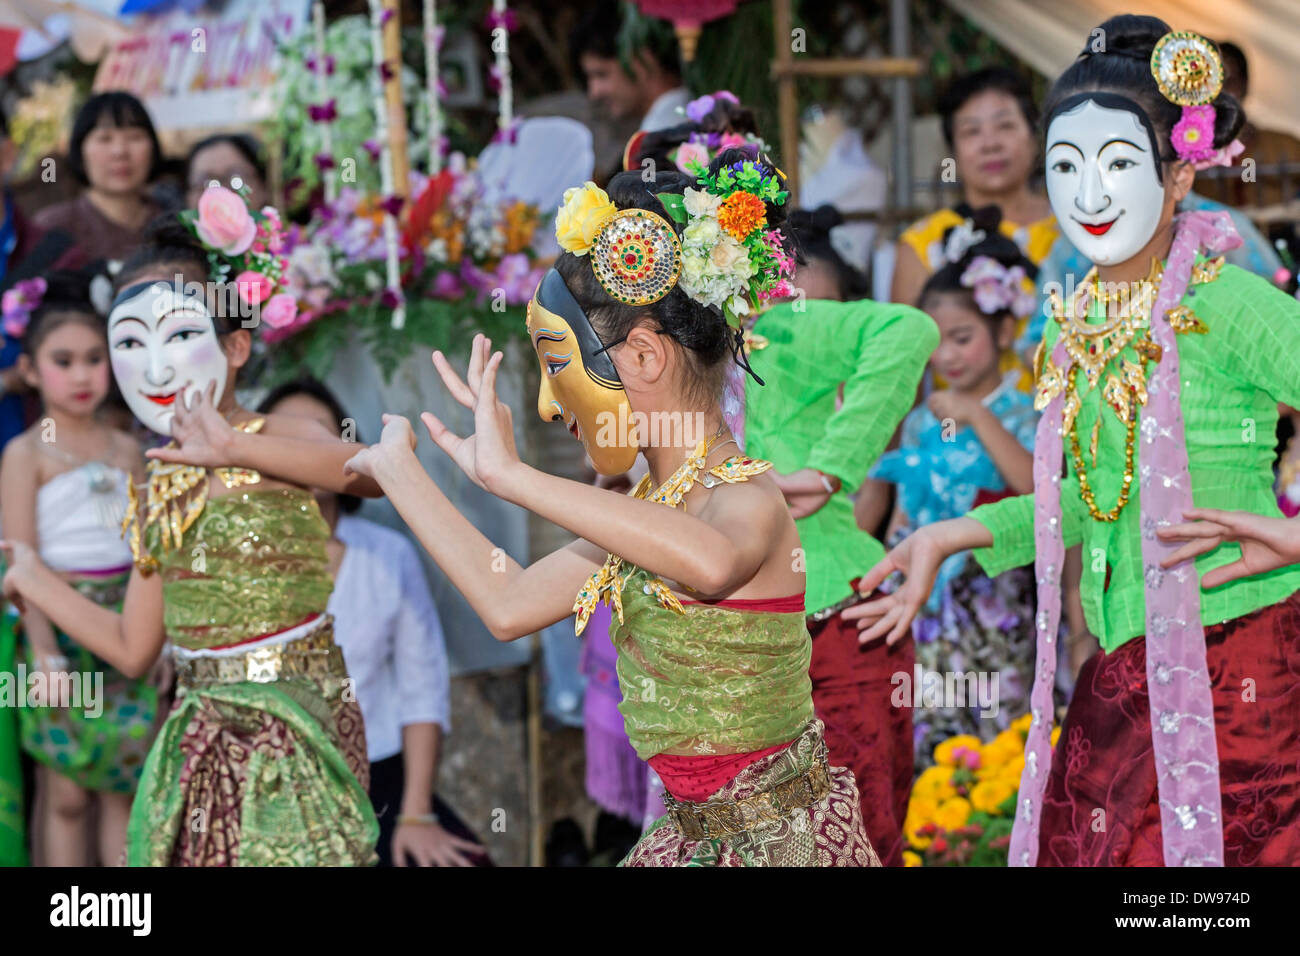 Spectacle de danse classique par les jeunes filles lors de la fête des fleurs, Chiang Mai, la province de Chiang Mai, Thaïlande Banque D'Images